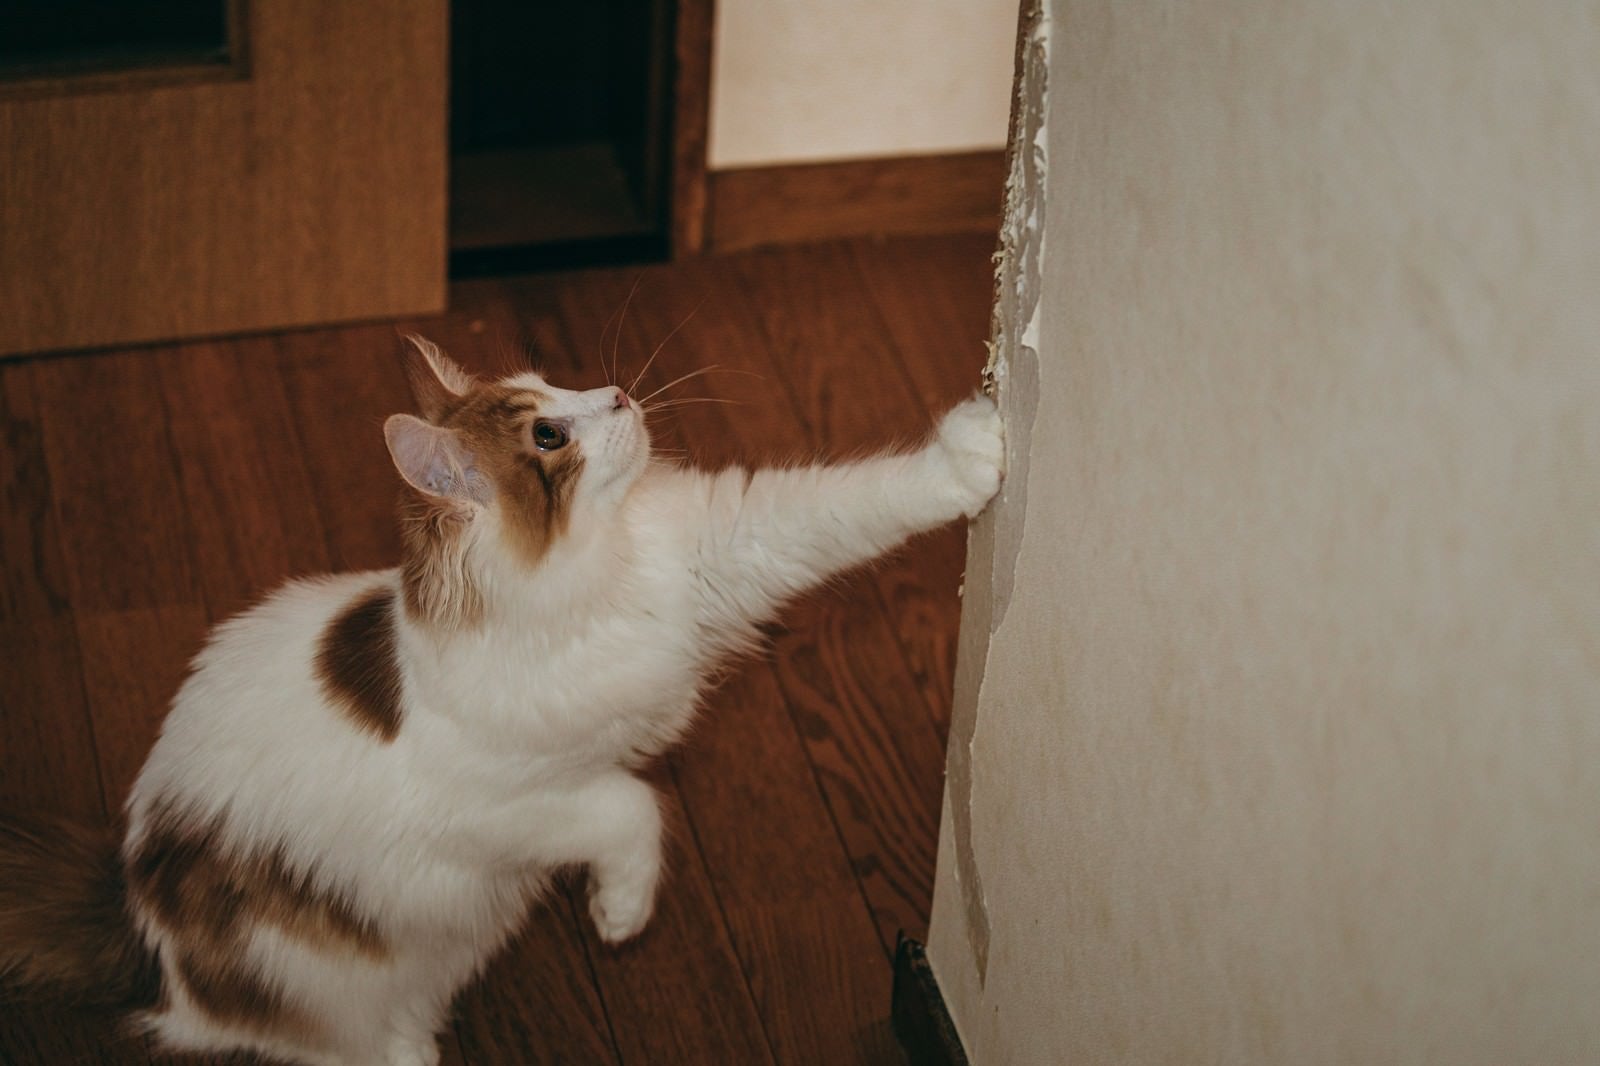 「壁紙がボロボロになるまで爪とぎする猫」の写真